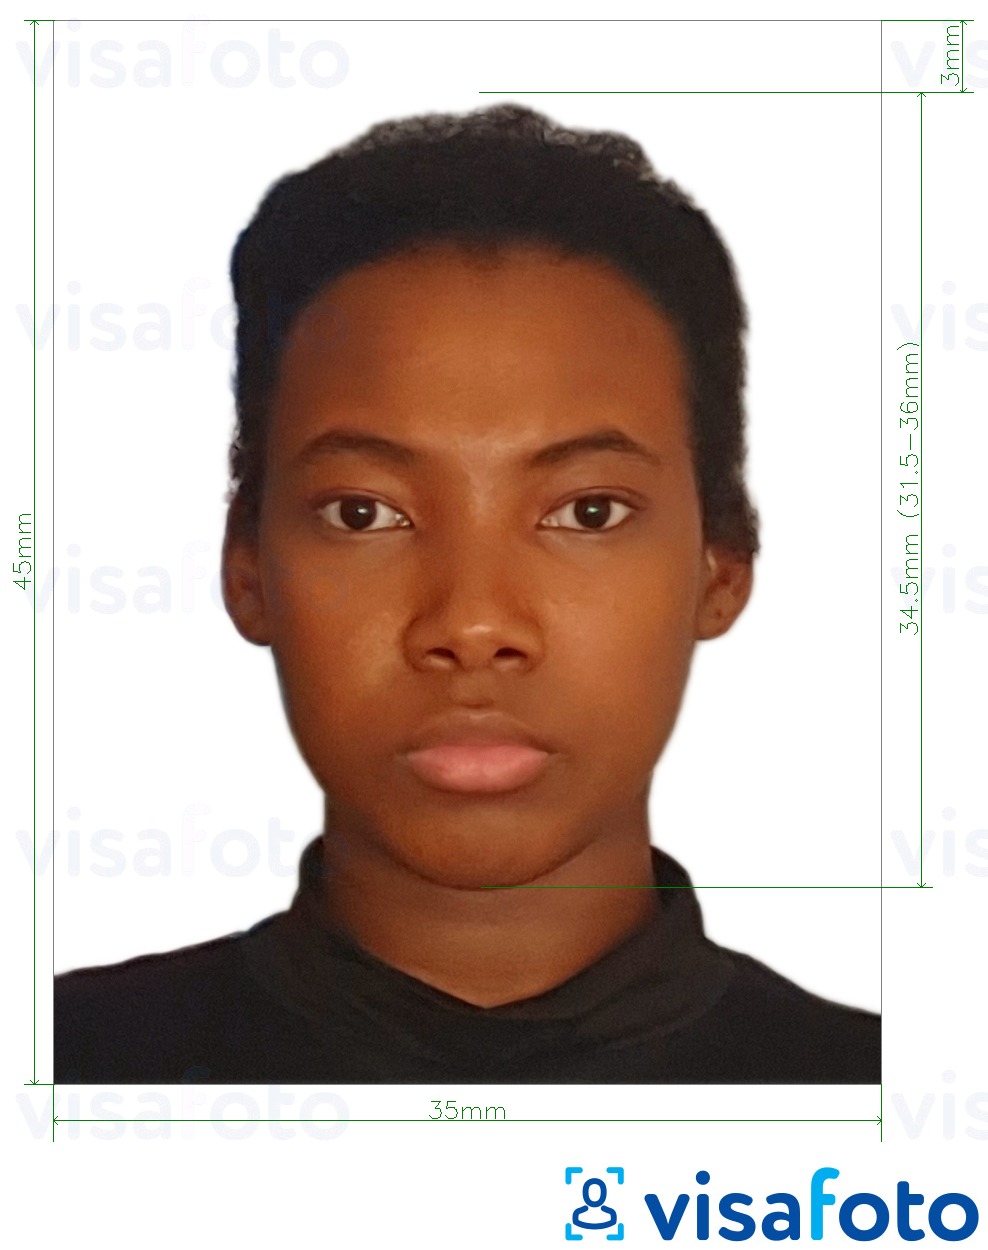 Contoh dari foto untuk Burkina Faso paspor 4,5x3,5 cm (45x35 mm) dengan ukuran spesifikasi yang tepat